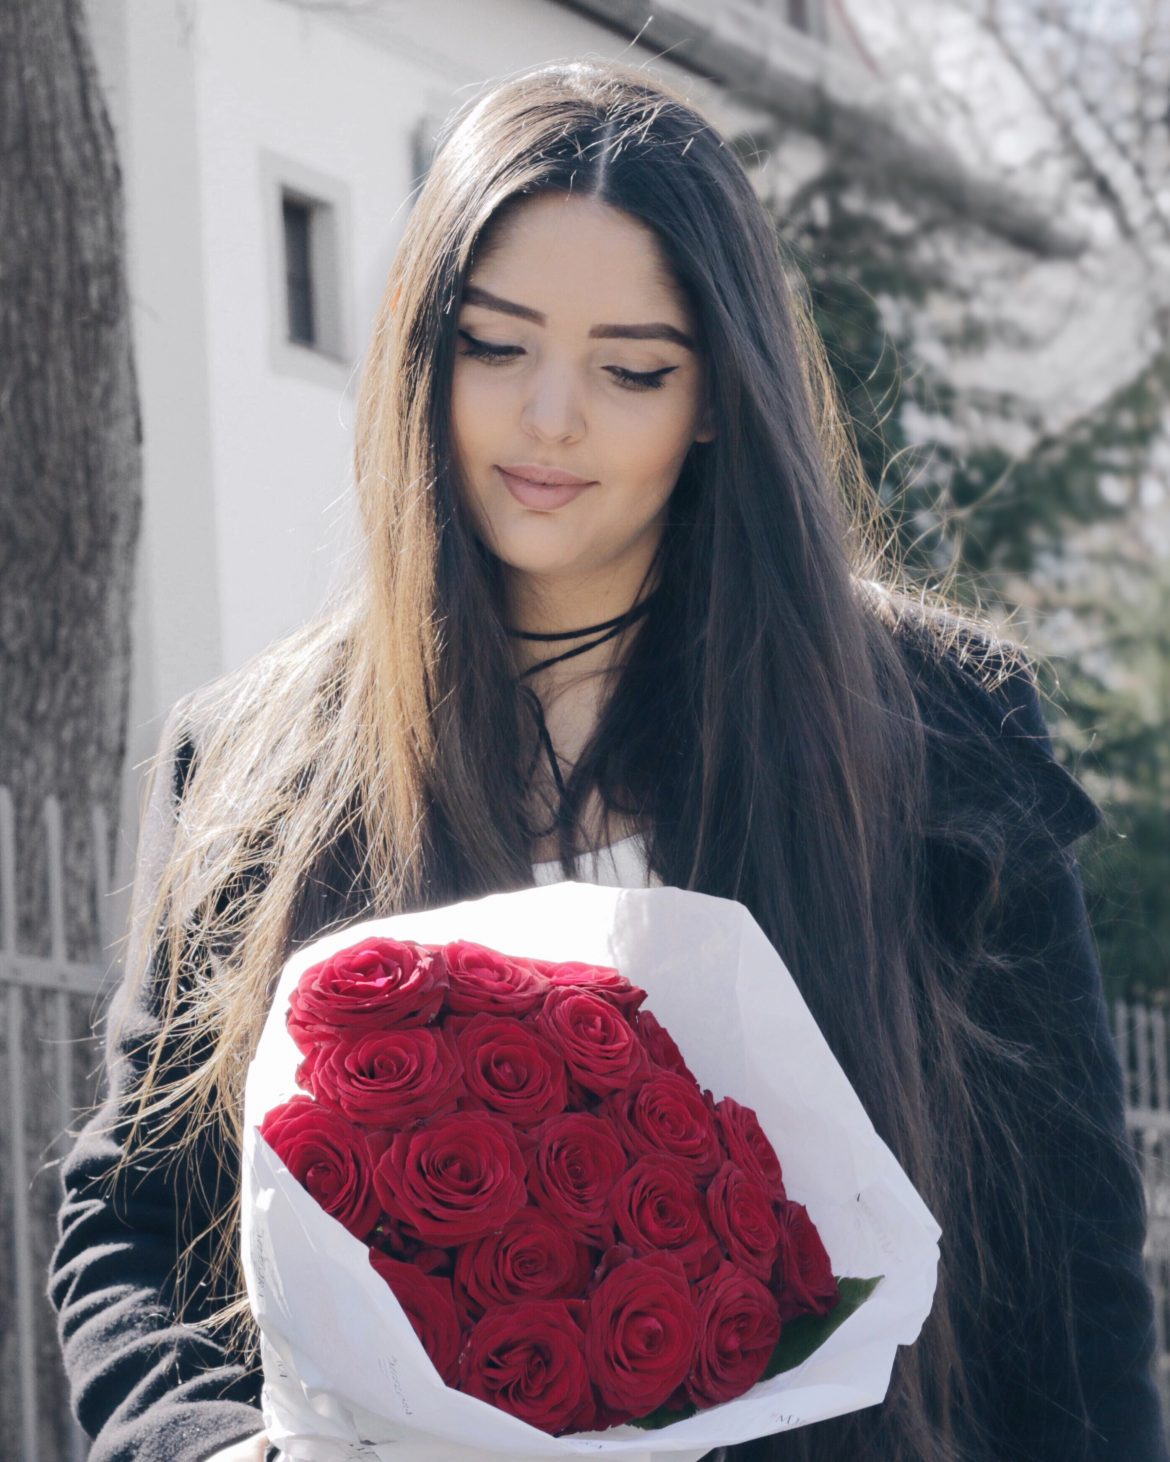 4 Dia das mães - Bouquet de rosas vermelhas - Kezia Happuck